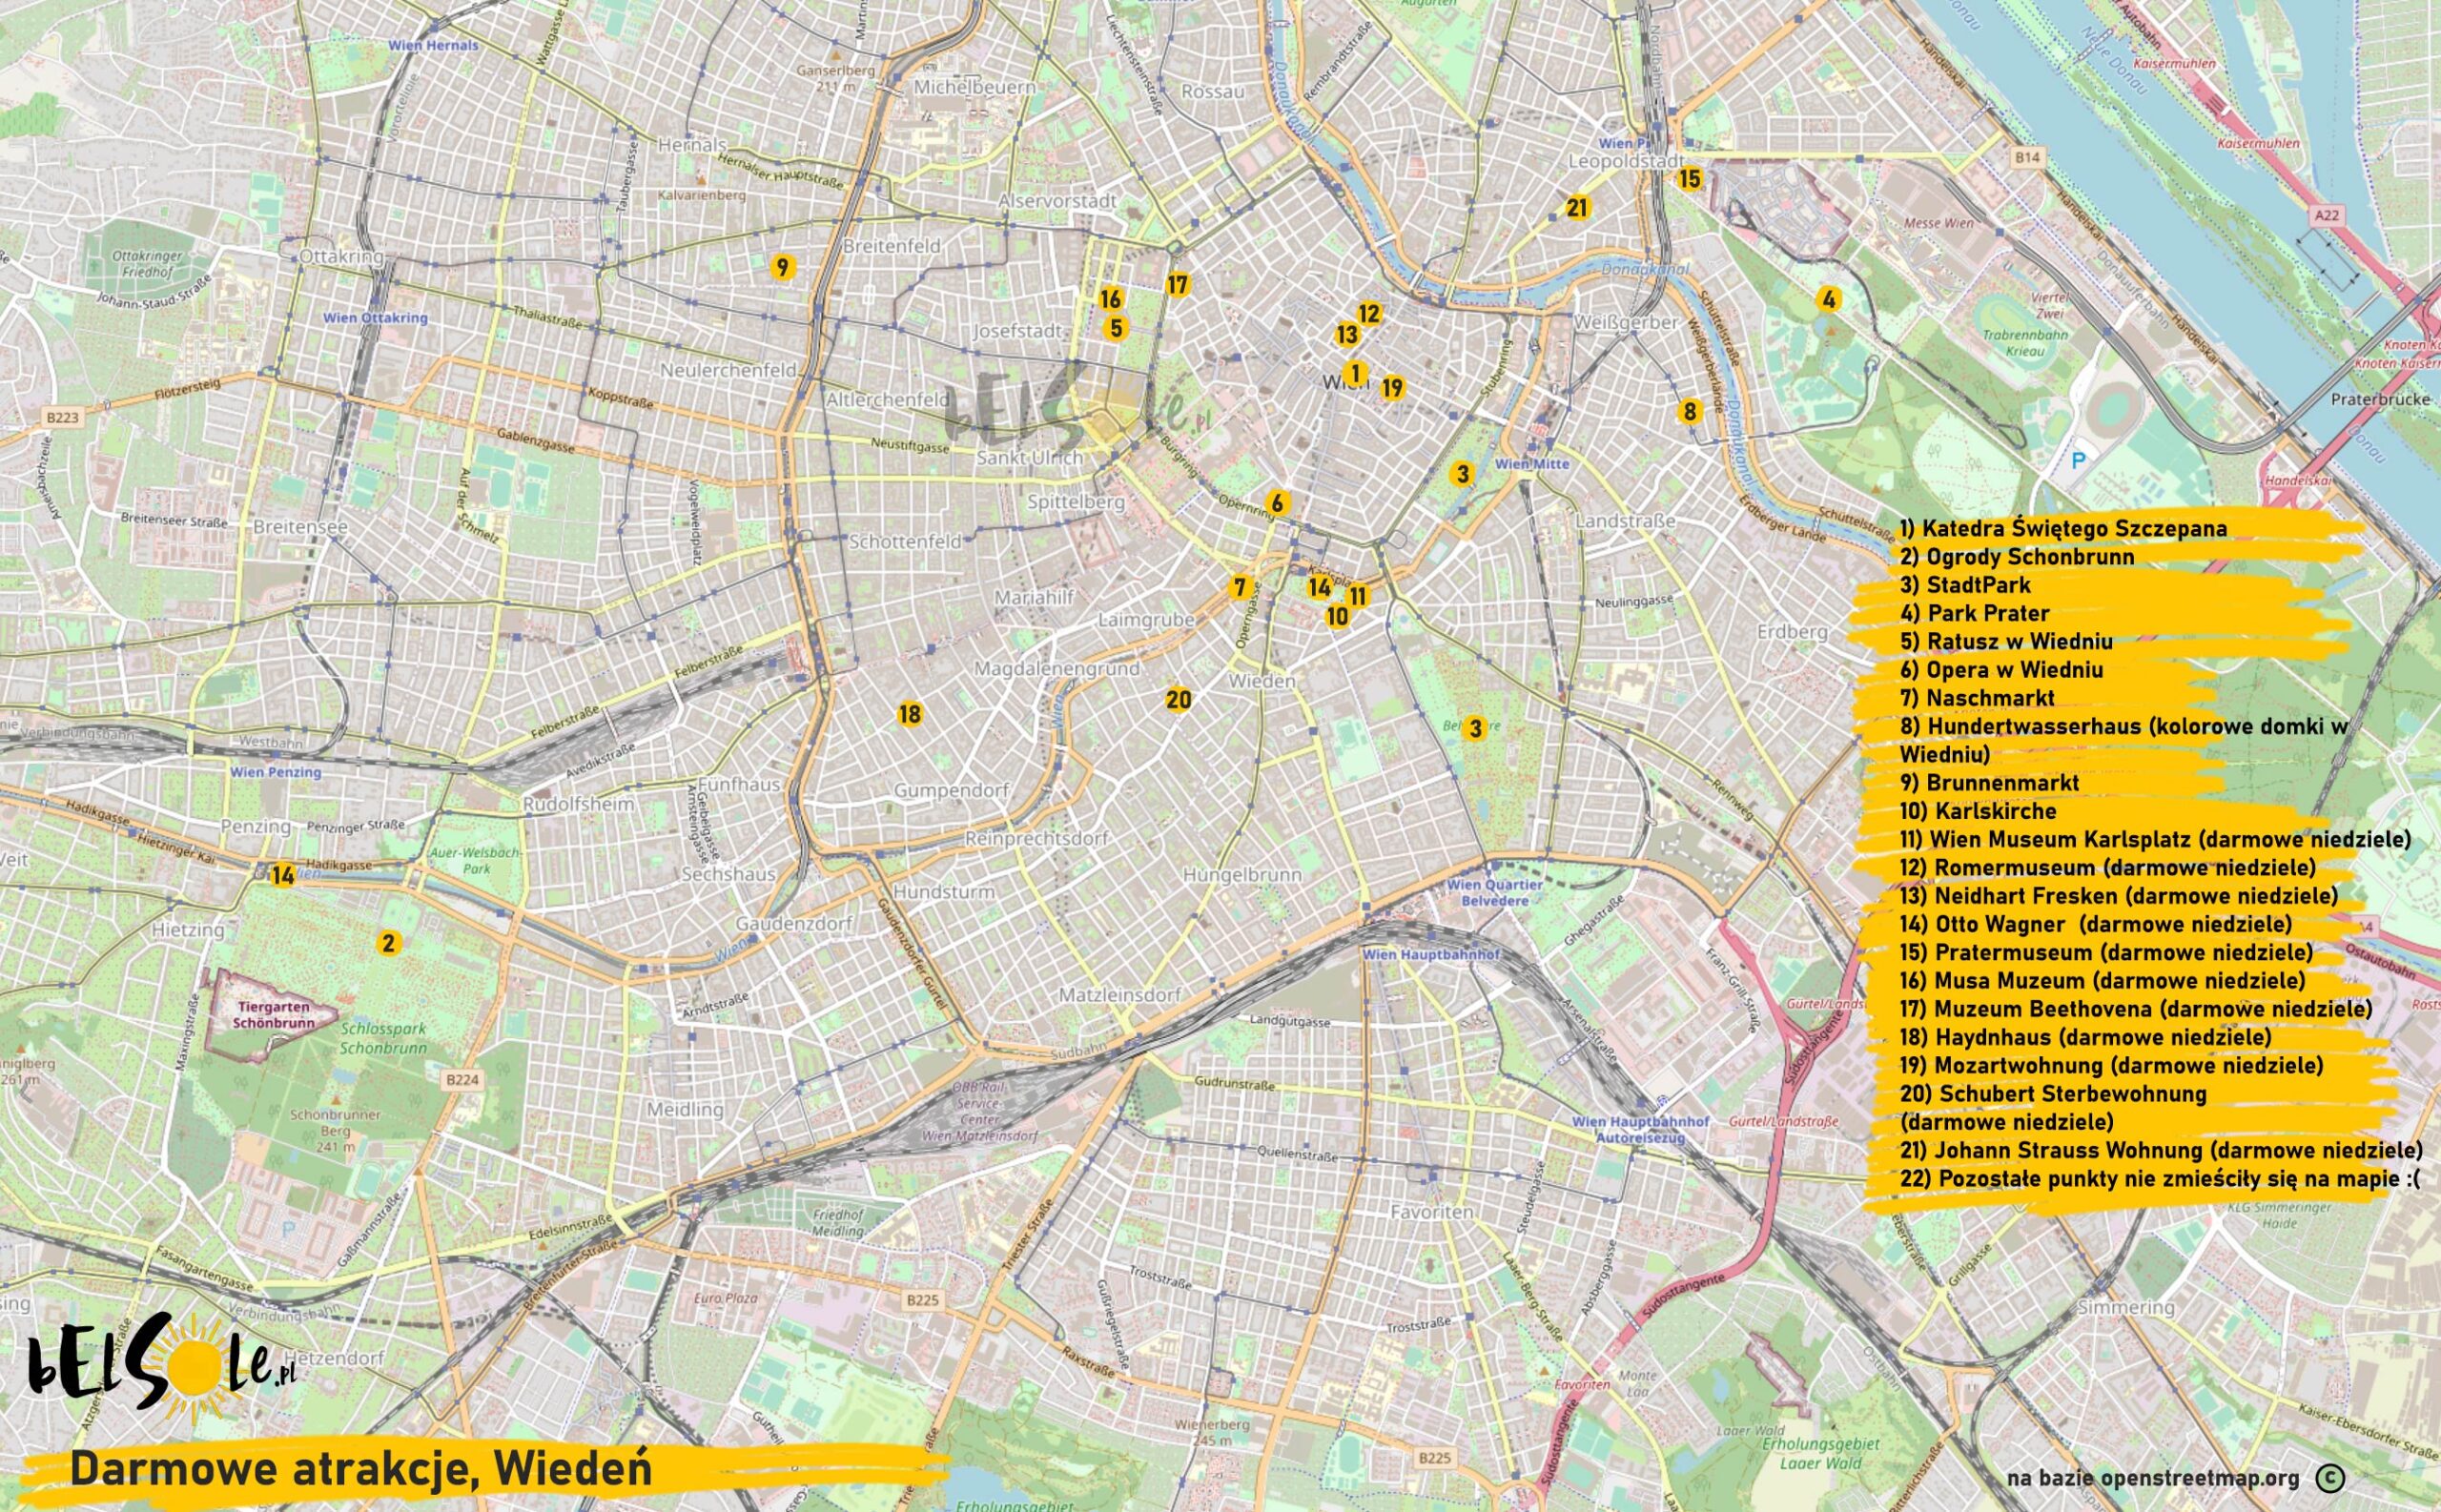 Darmowe atrakcje Wiednia mapa